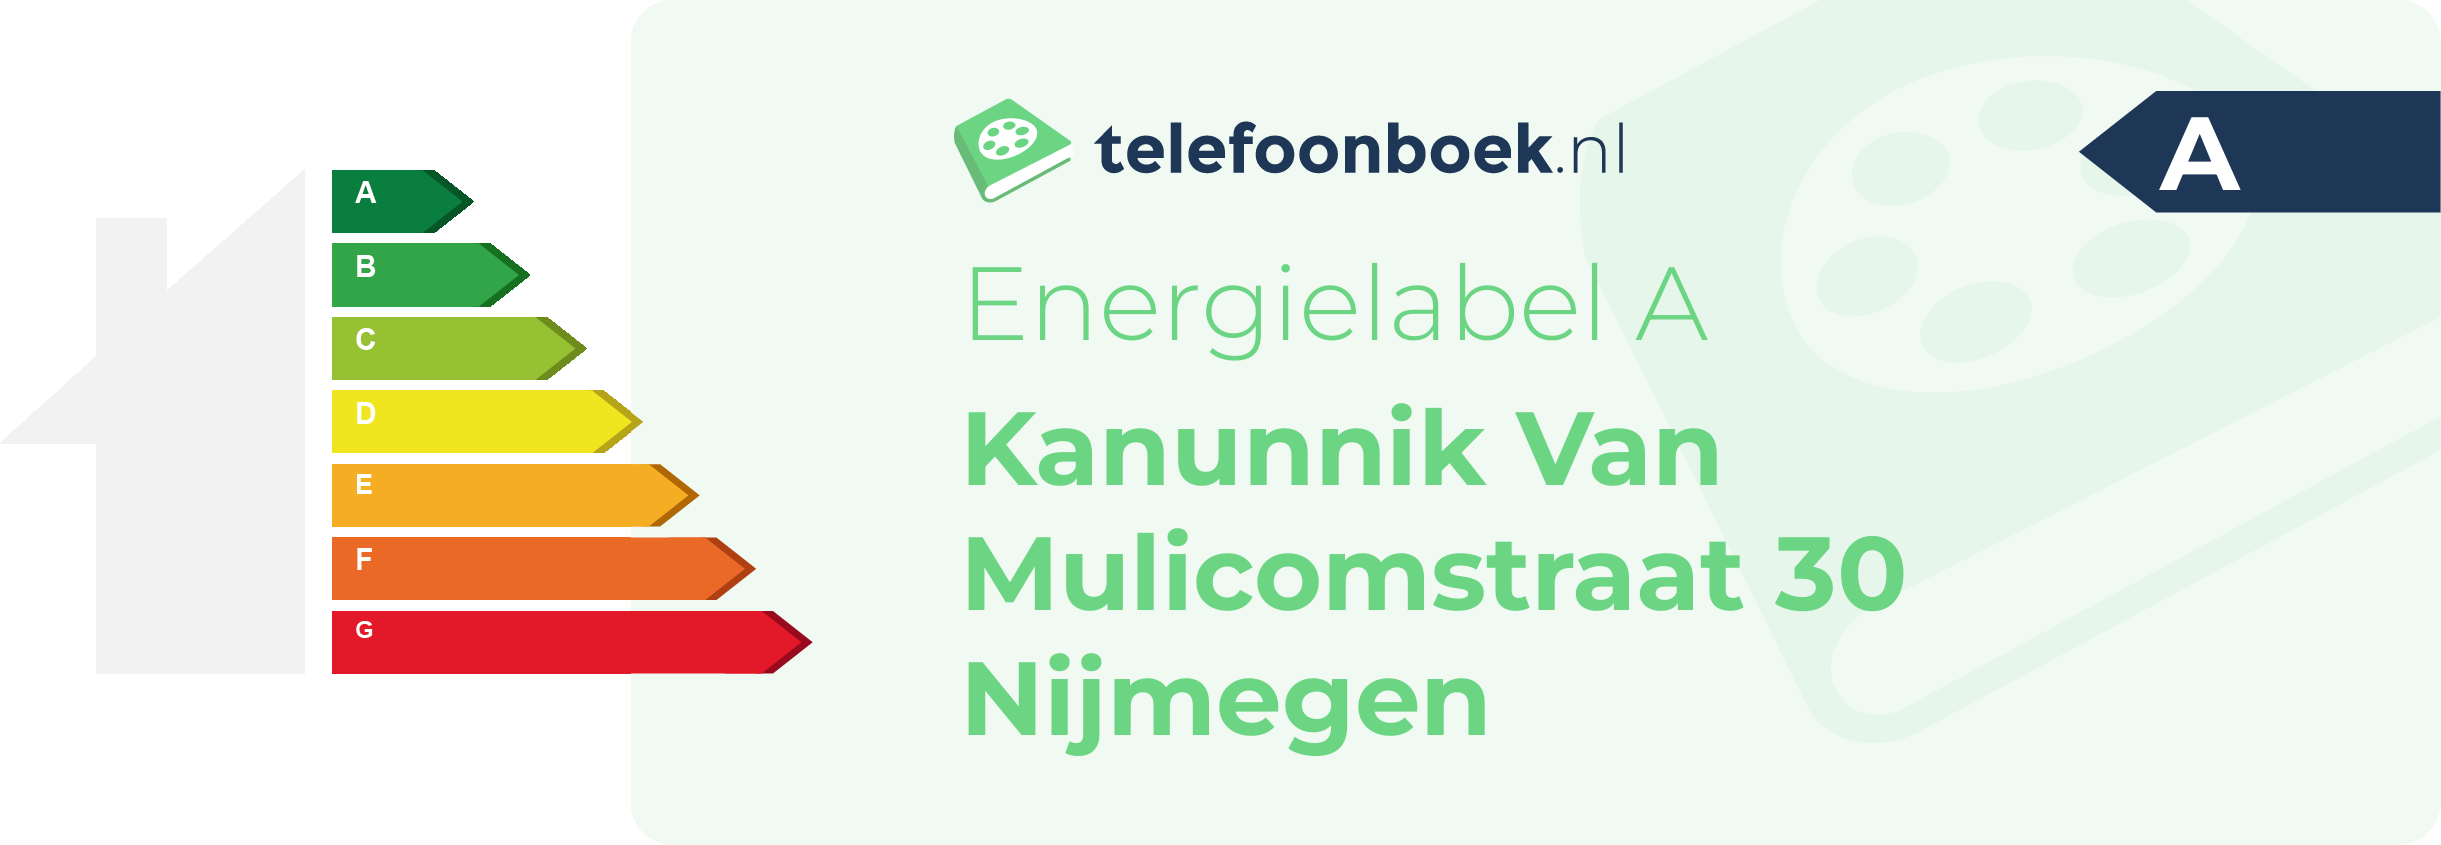 Energielabel Kanunnik Van Mulicomstraat 30 Nijmegen